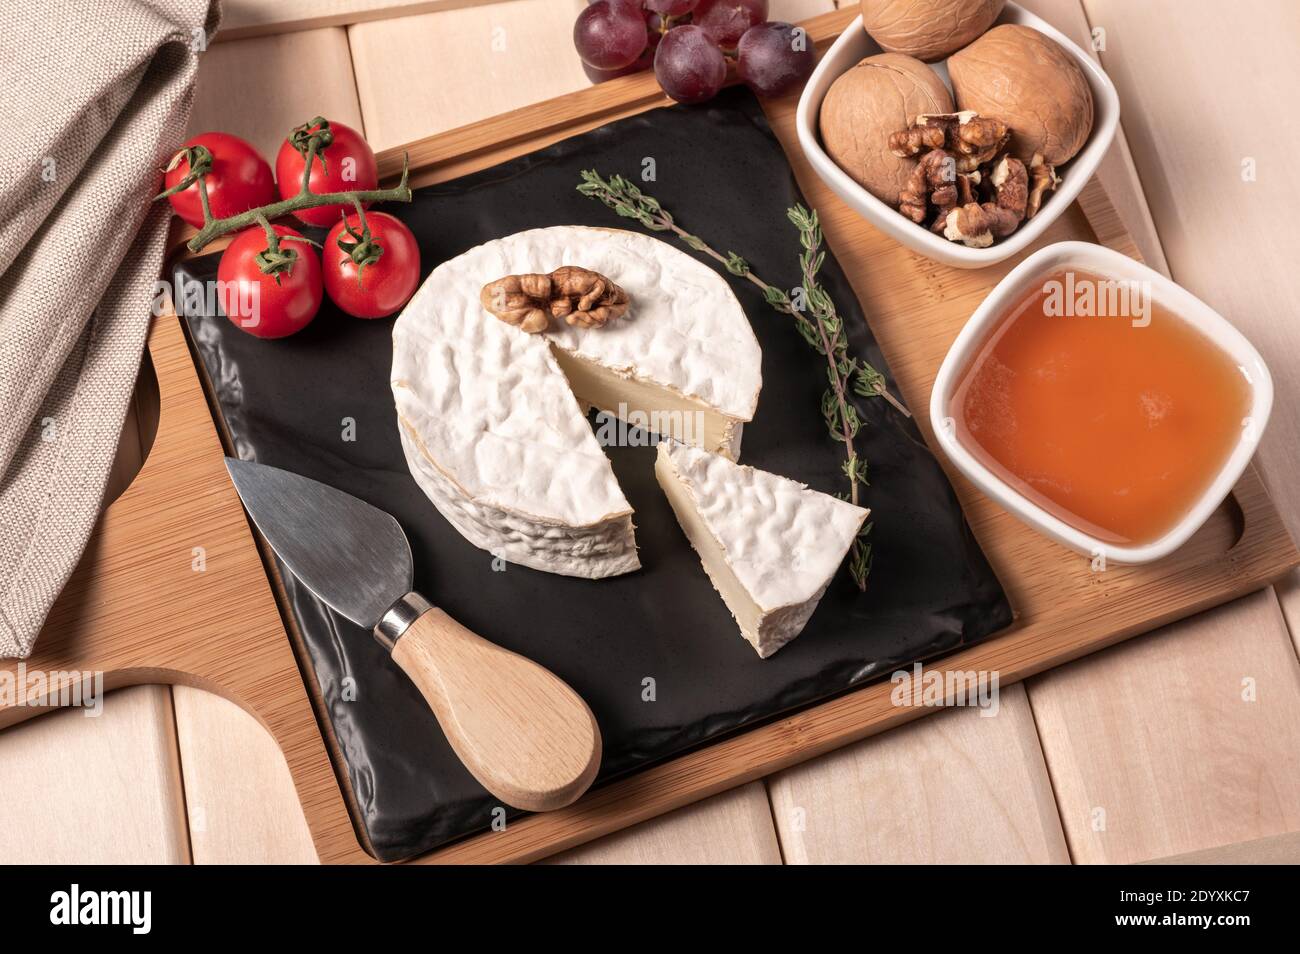 Holztablett zum Frühstück mit Brie-Käse, Honig, Walnüssen, Tomaten. Käse Frühstück auf dem Holztablett mit schwarzem Teller Stockfoto